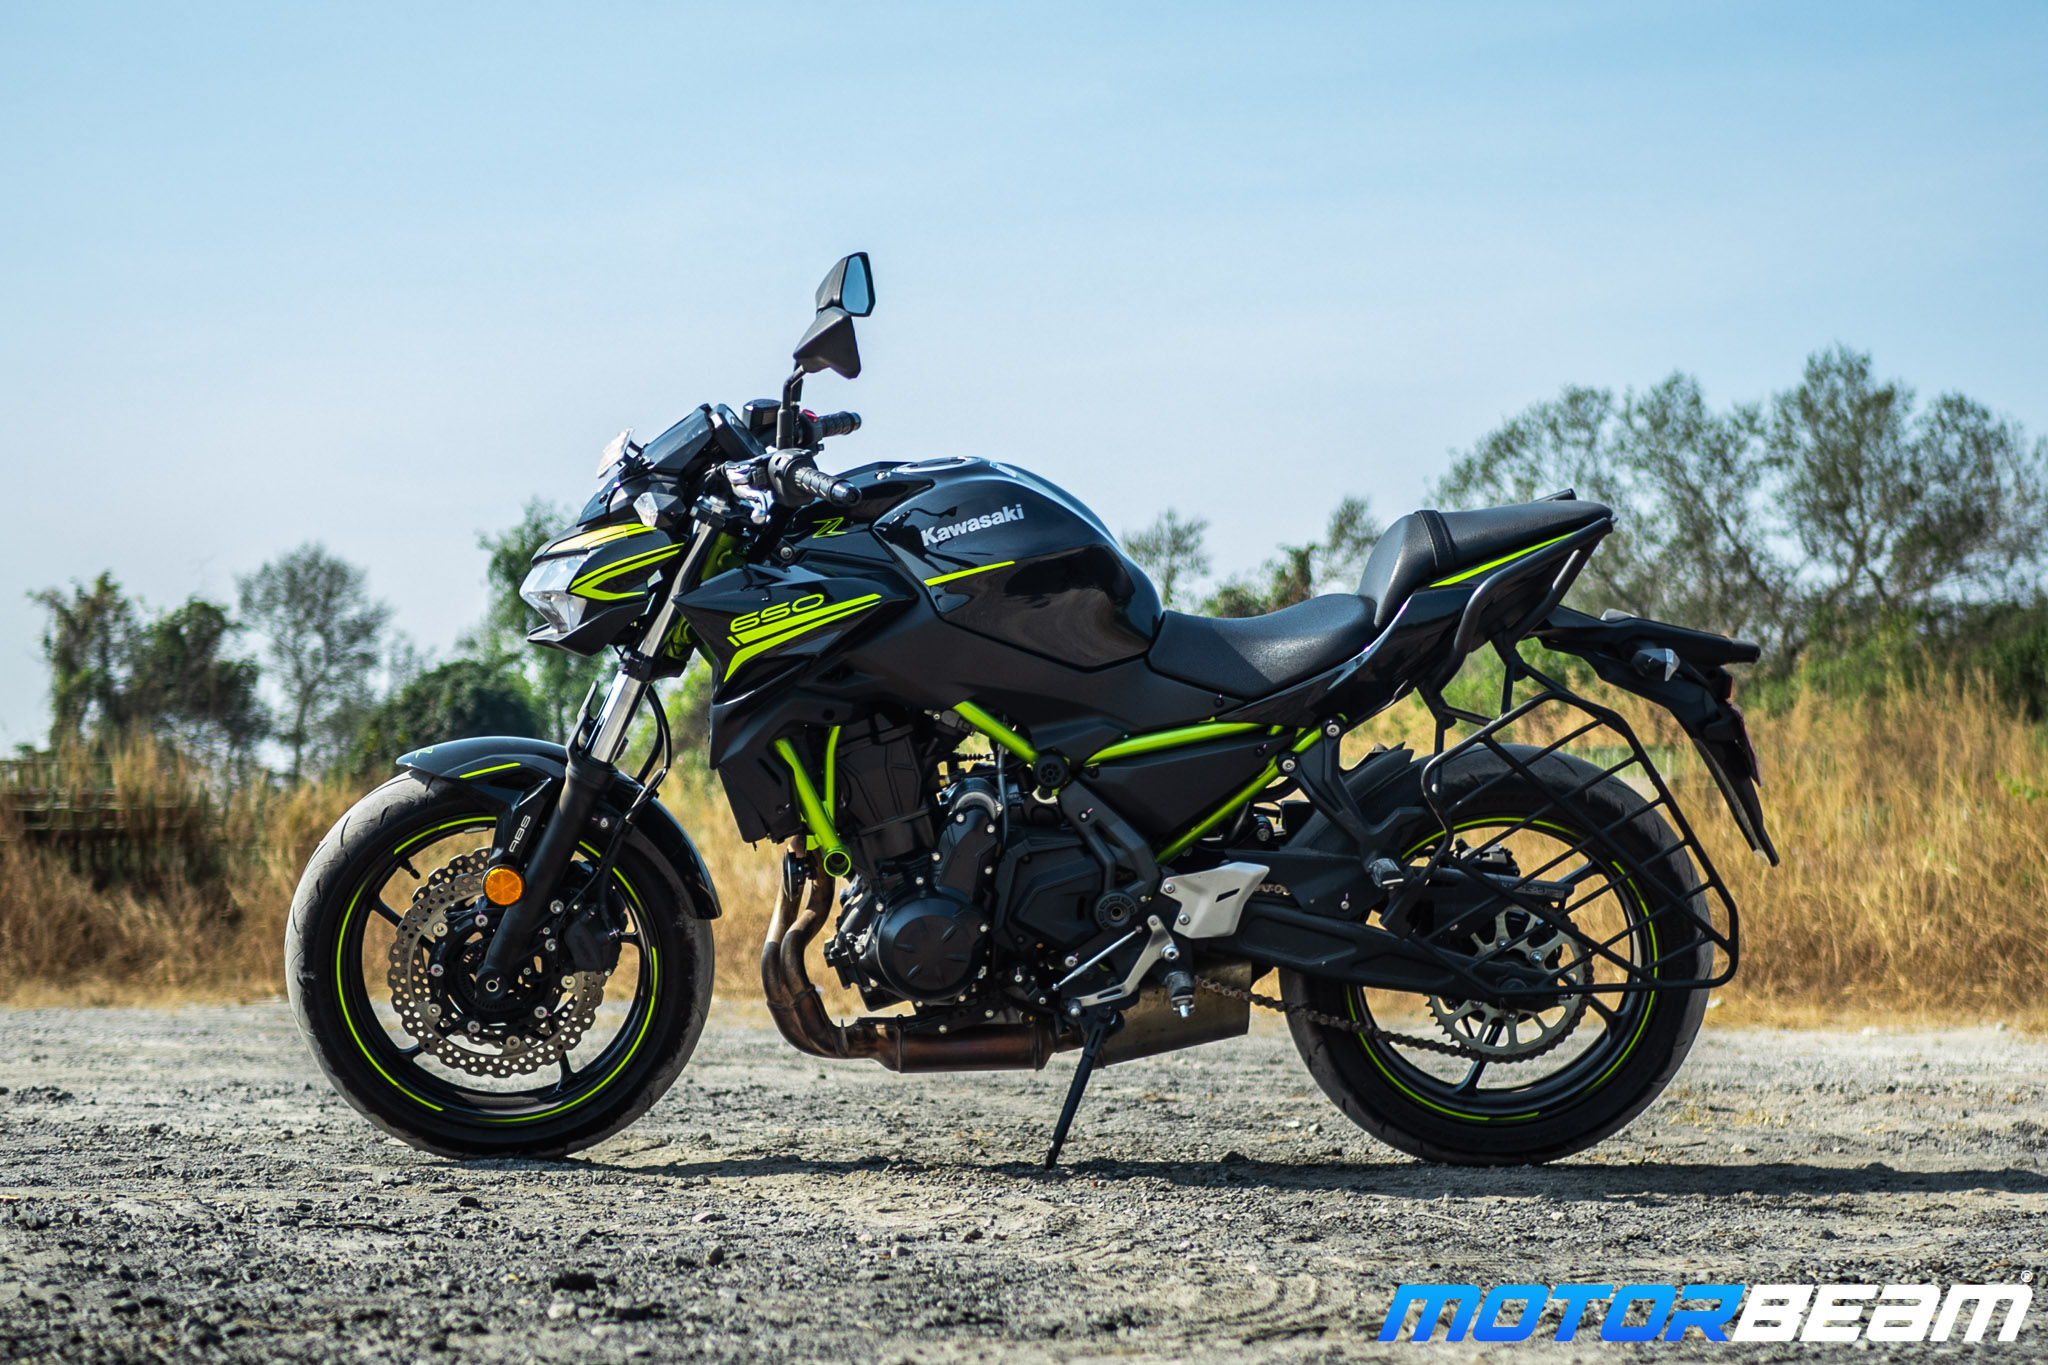 2021 Kawasaki Z650 Test Ride Review 6